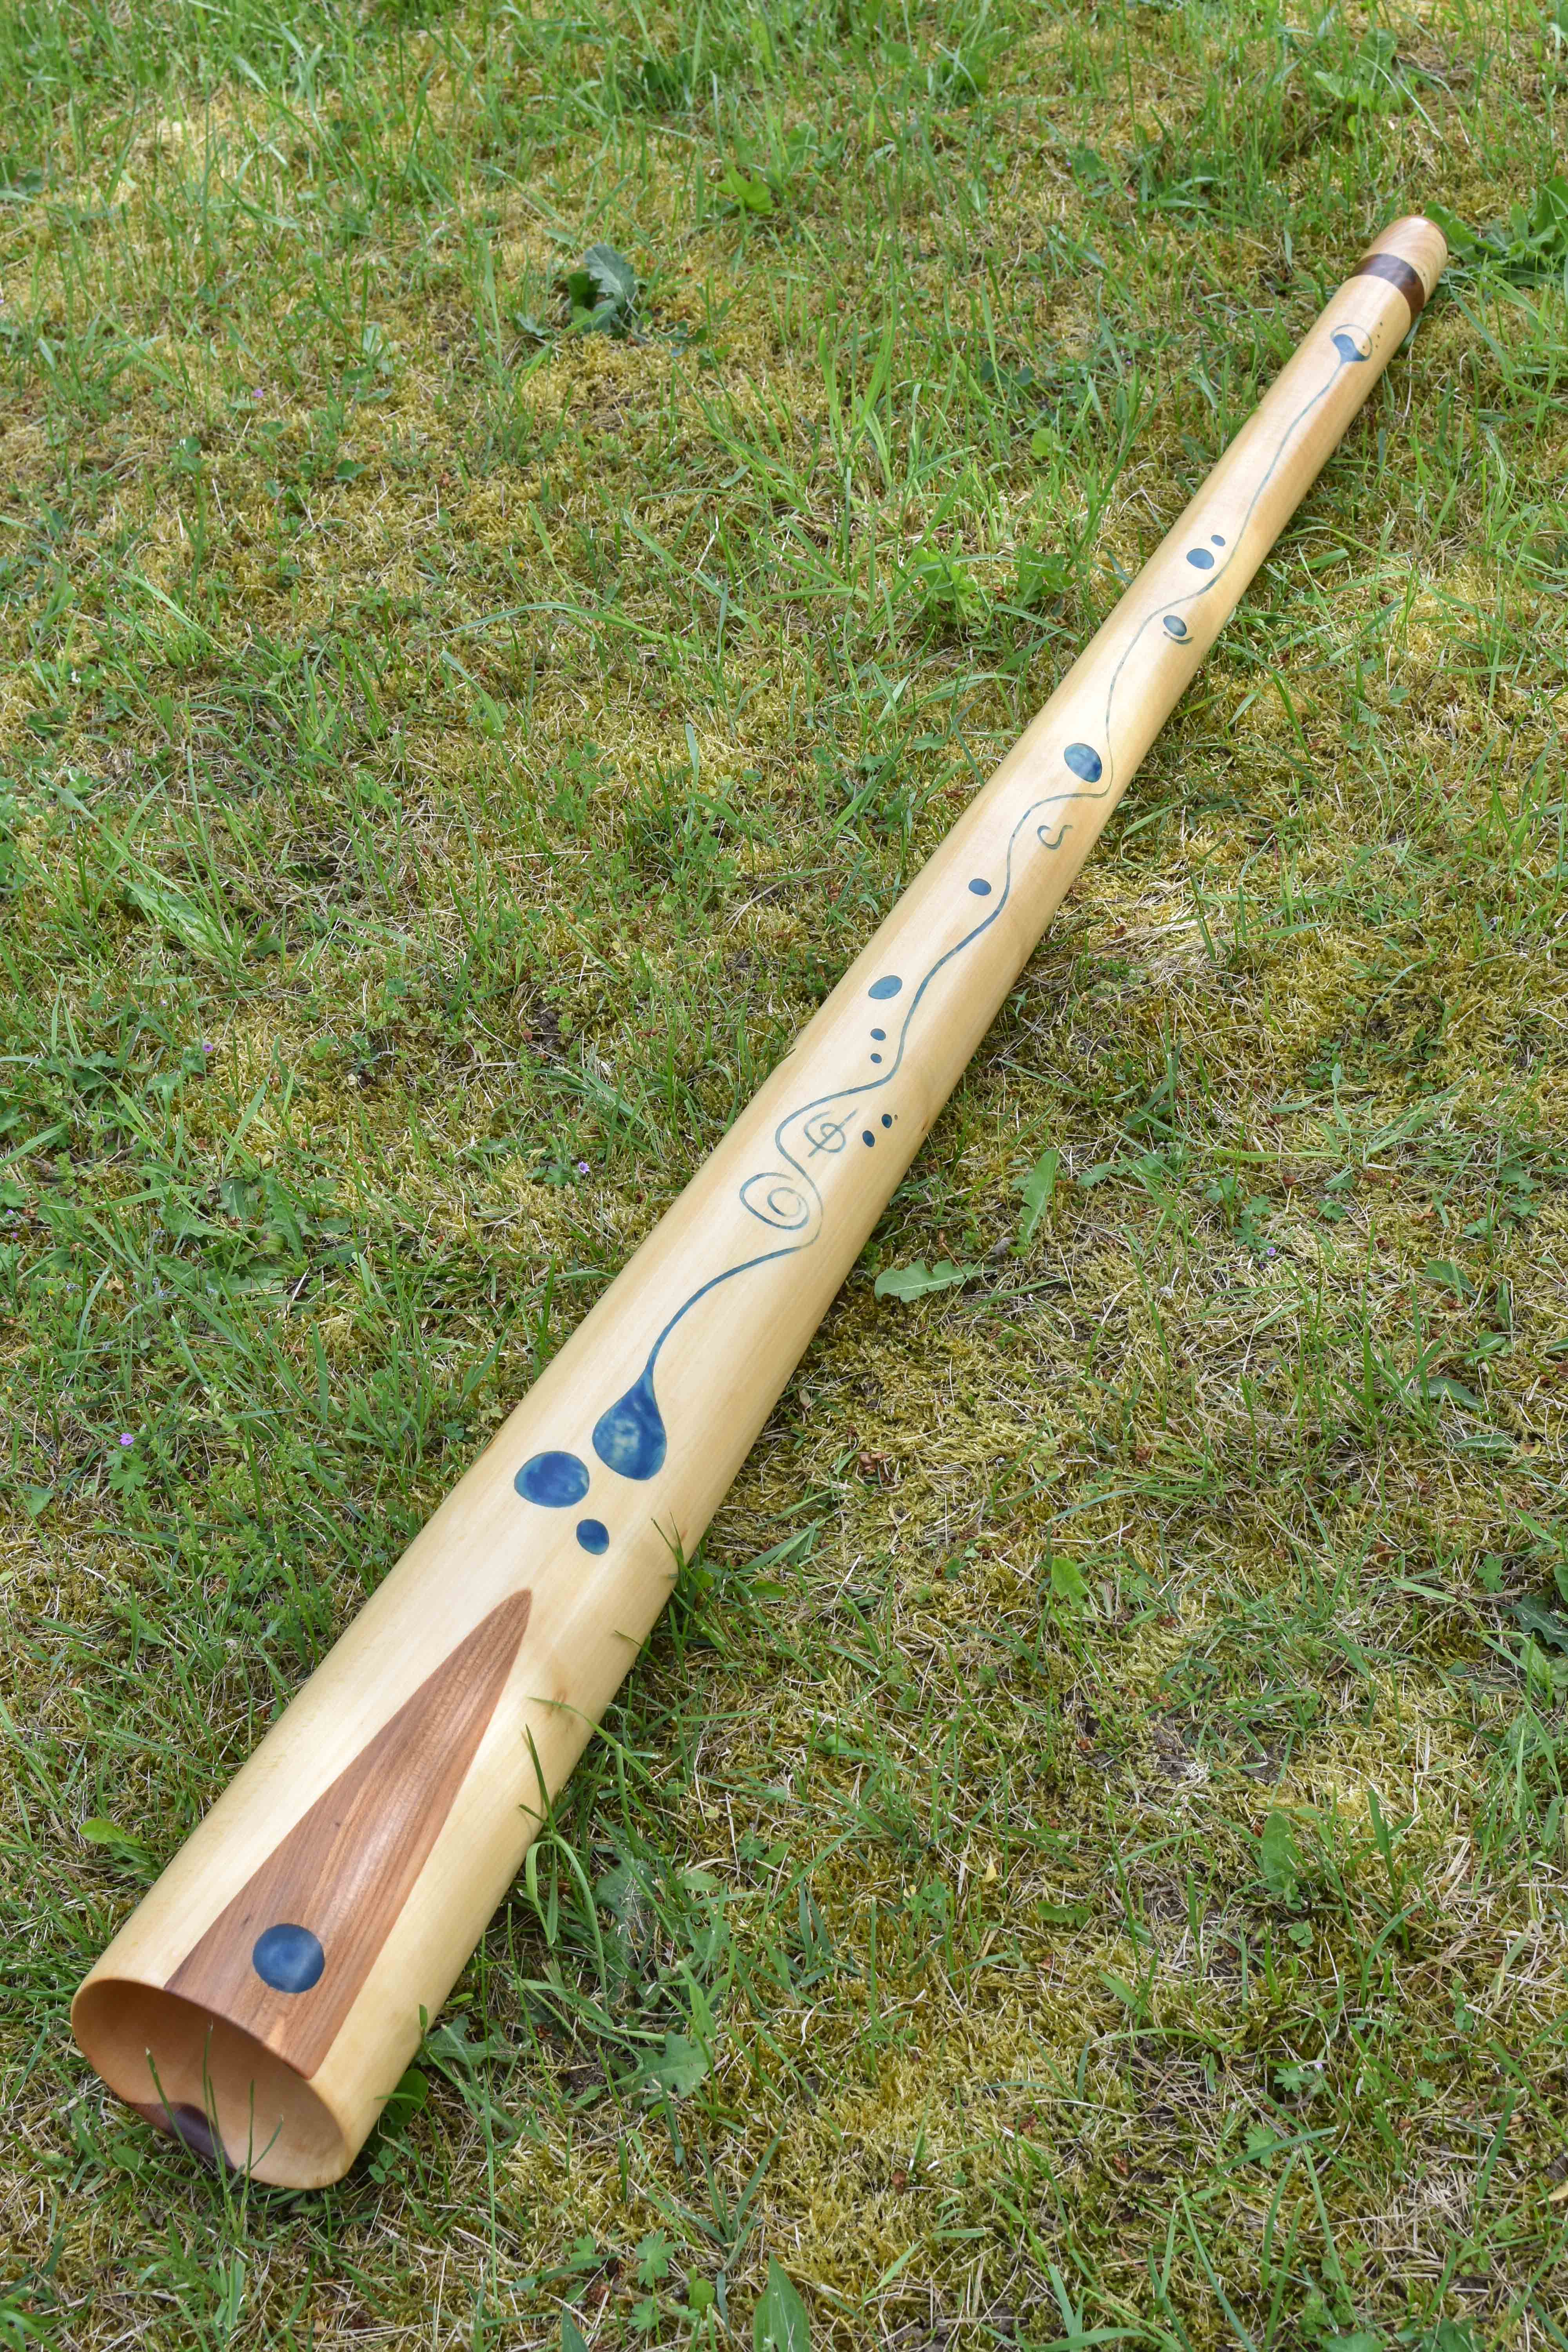  Didgeridoo nommé Awa, en Mi, tout droit, fabriqué en bois de tilleul, avec des incrustations de résine colorées bleu